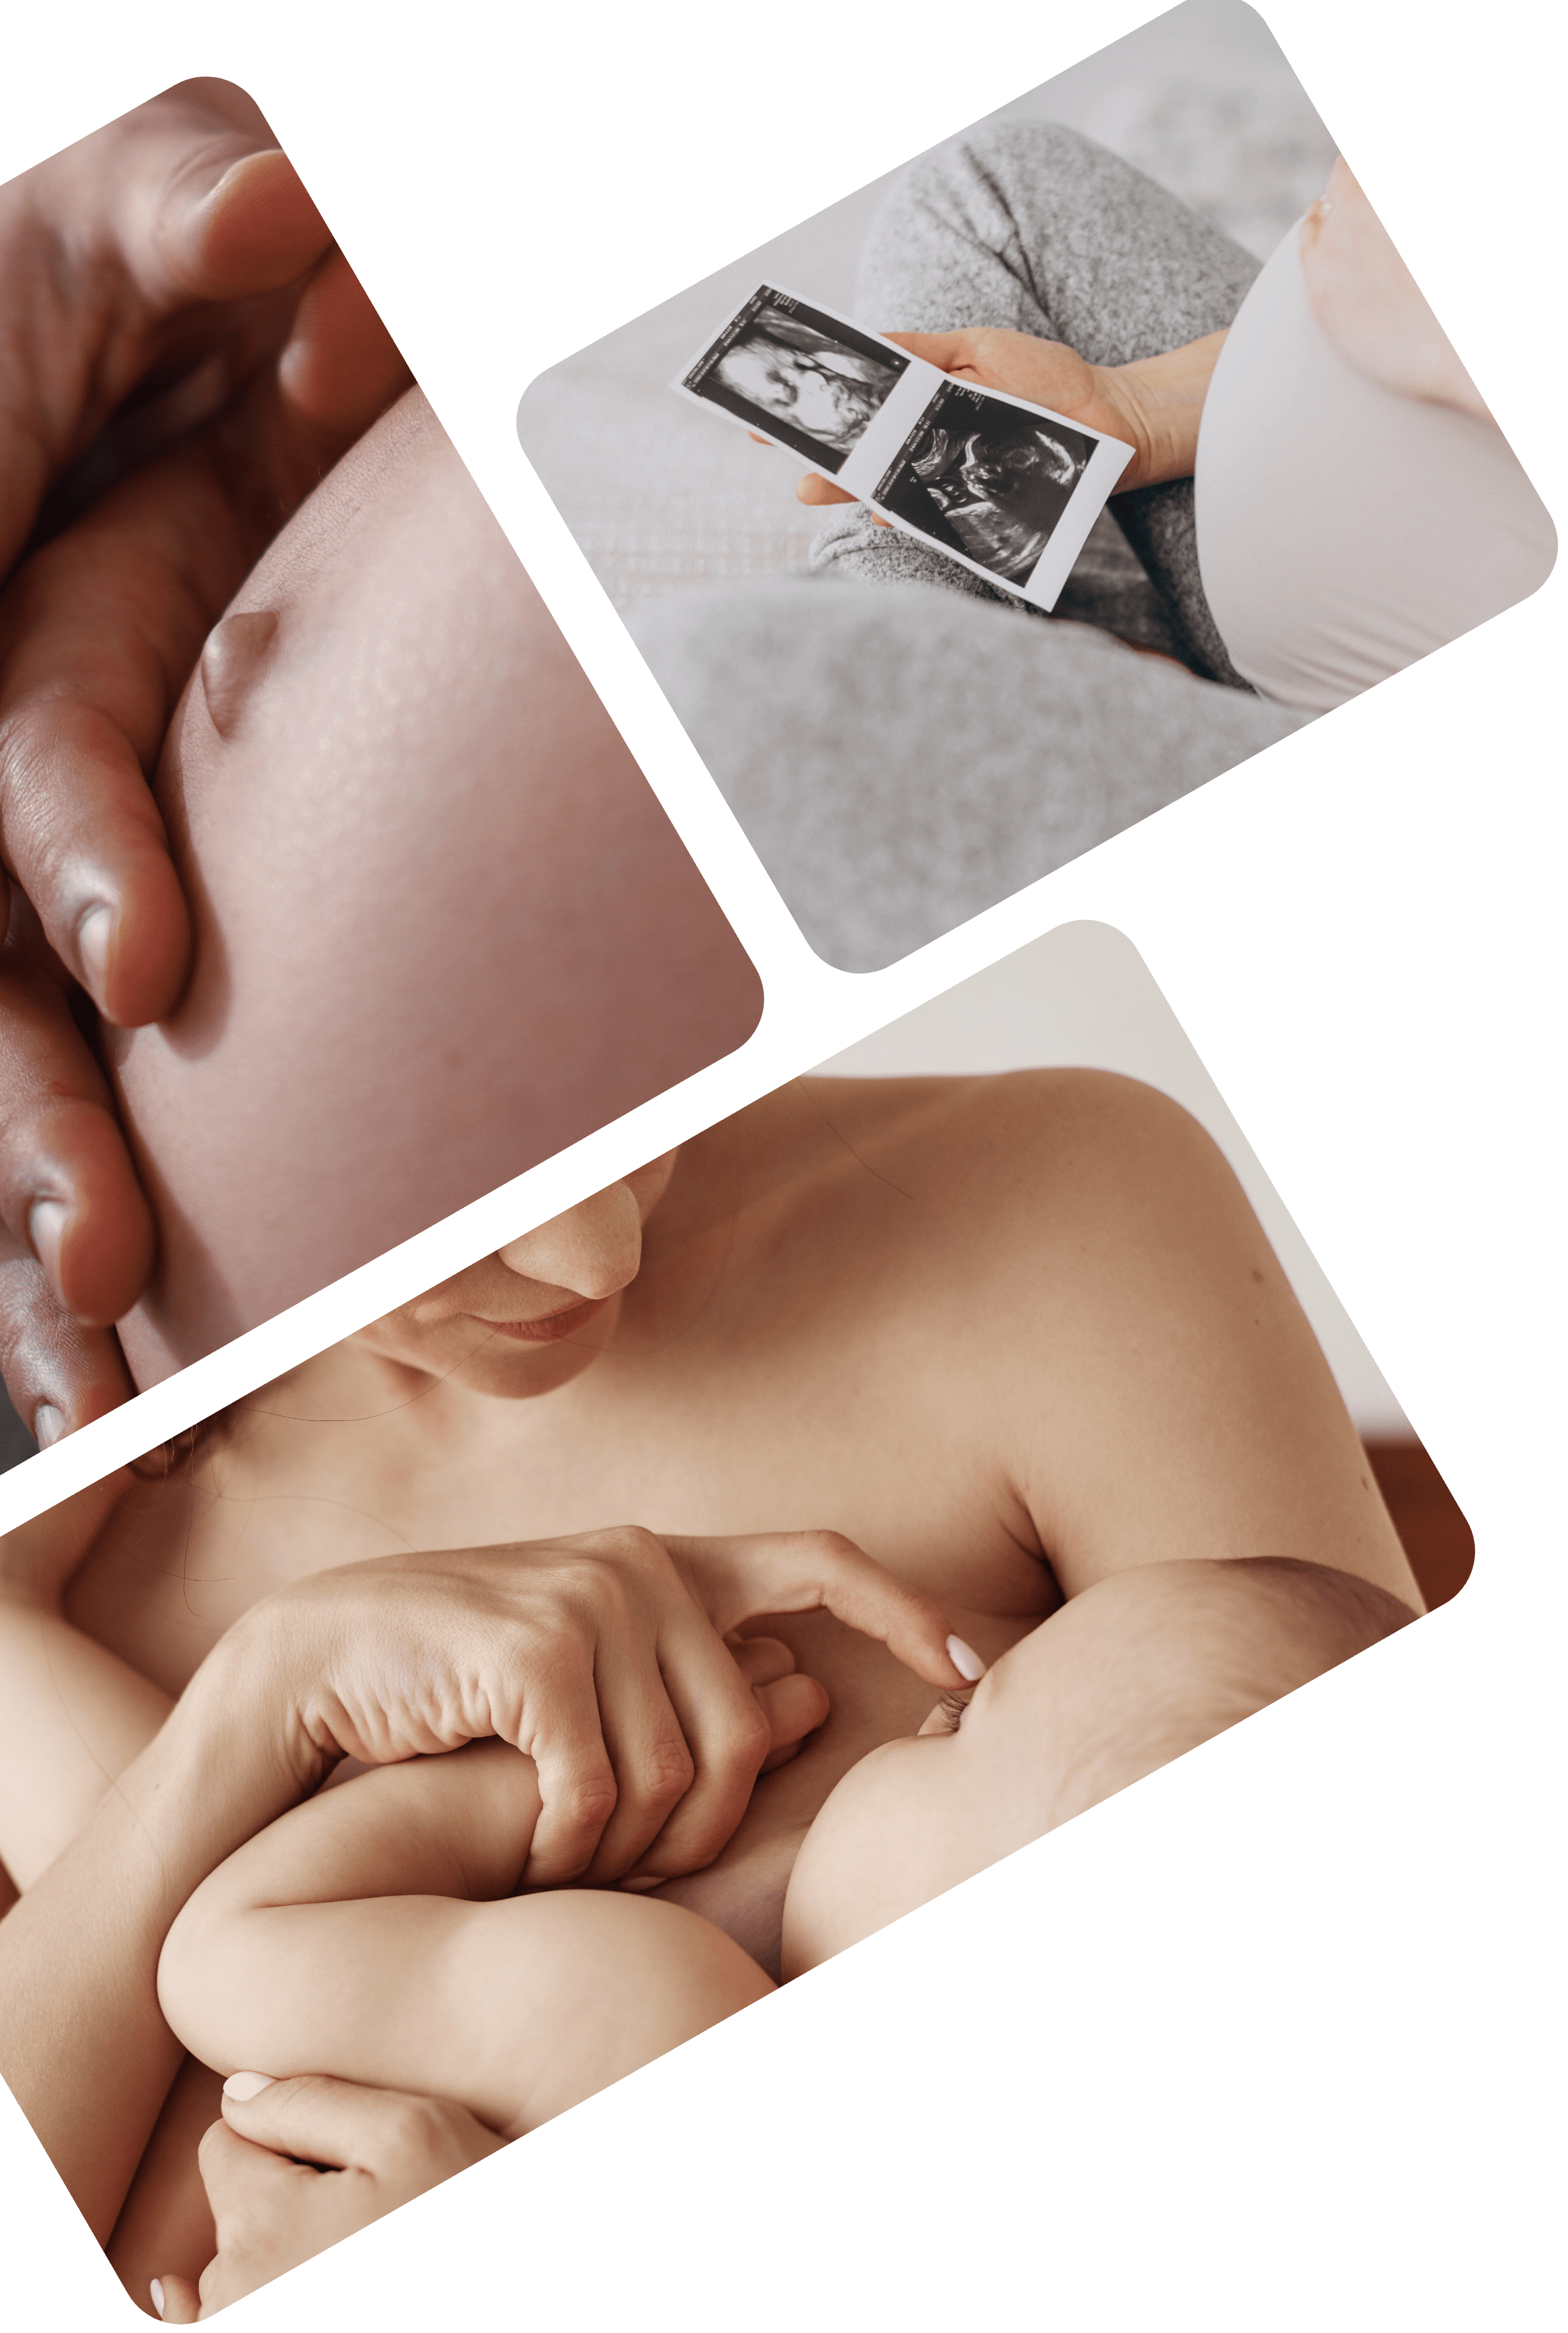 Fertilium Vitaminas Embarazo + Preconcepcion Mujer + Prenatal